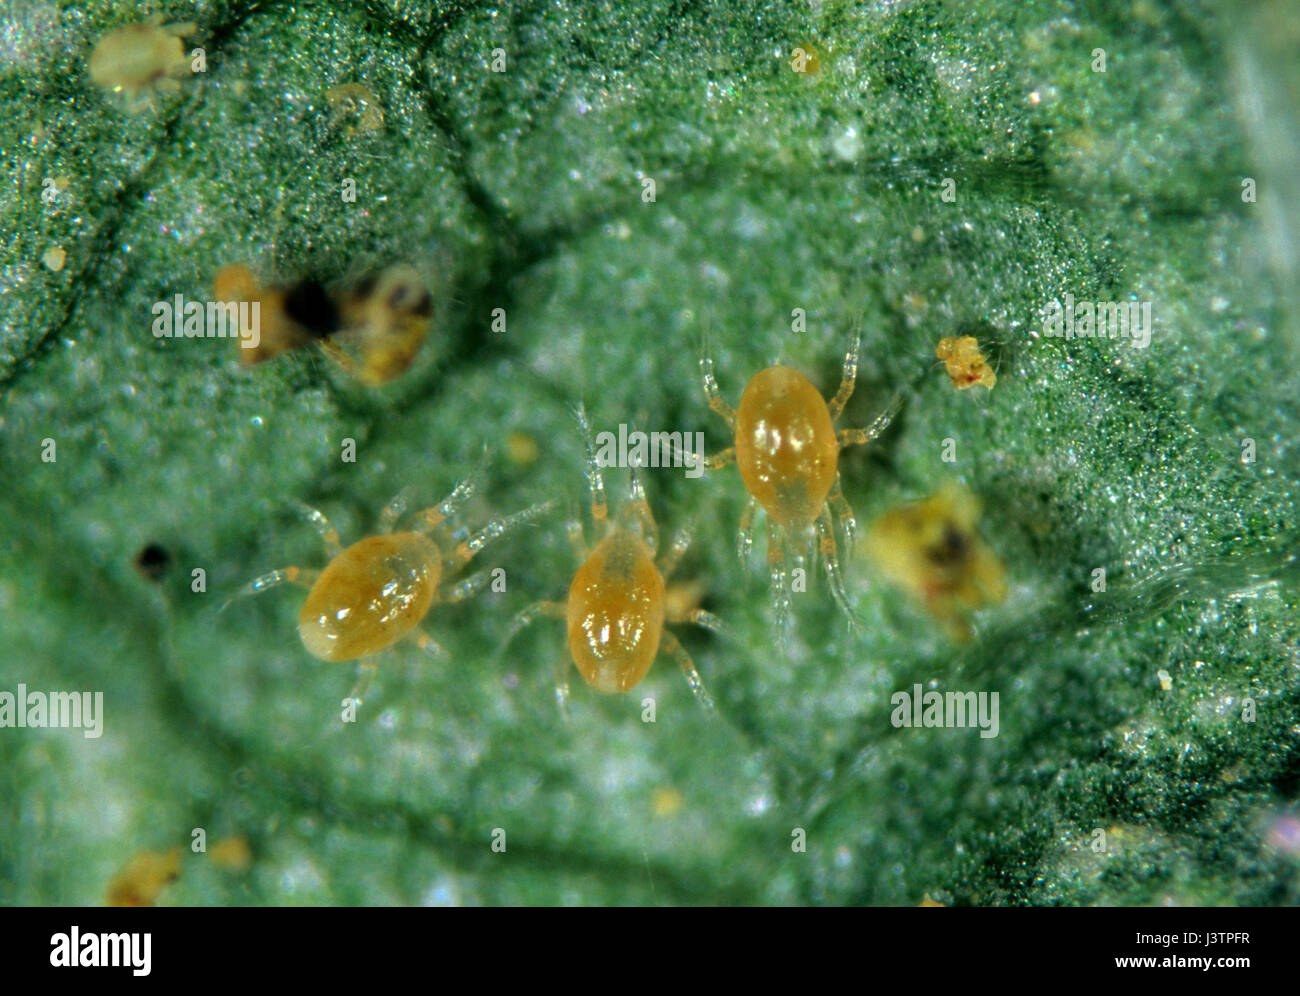 Los ácaros depredadores (Phytoseiulus persimilis) sobre una hoja con ácaros presa Foto de stock